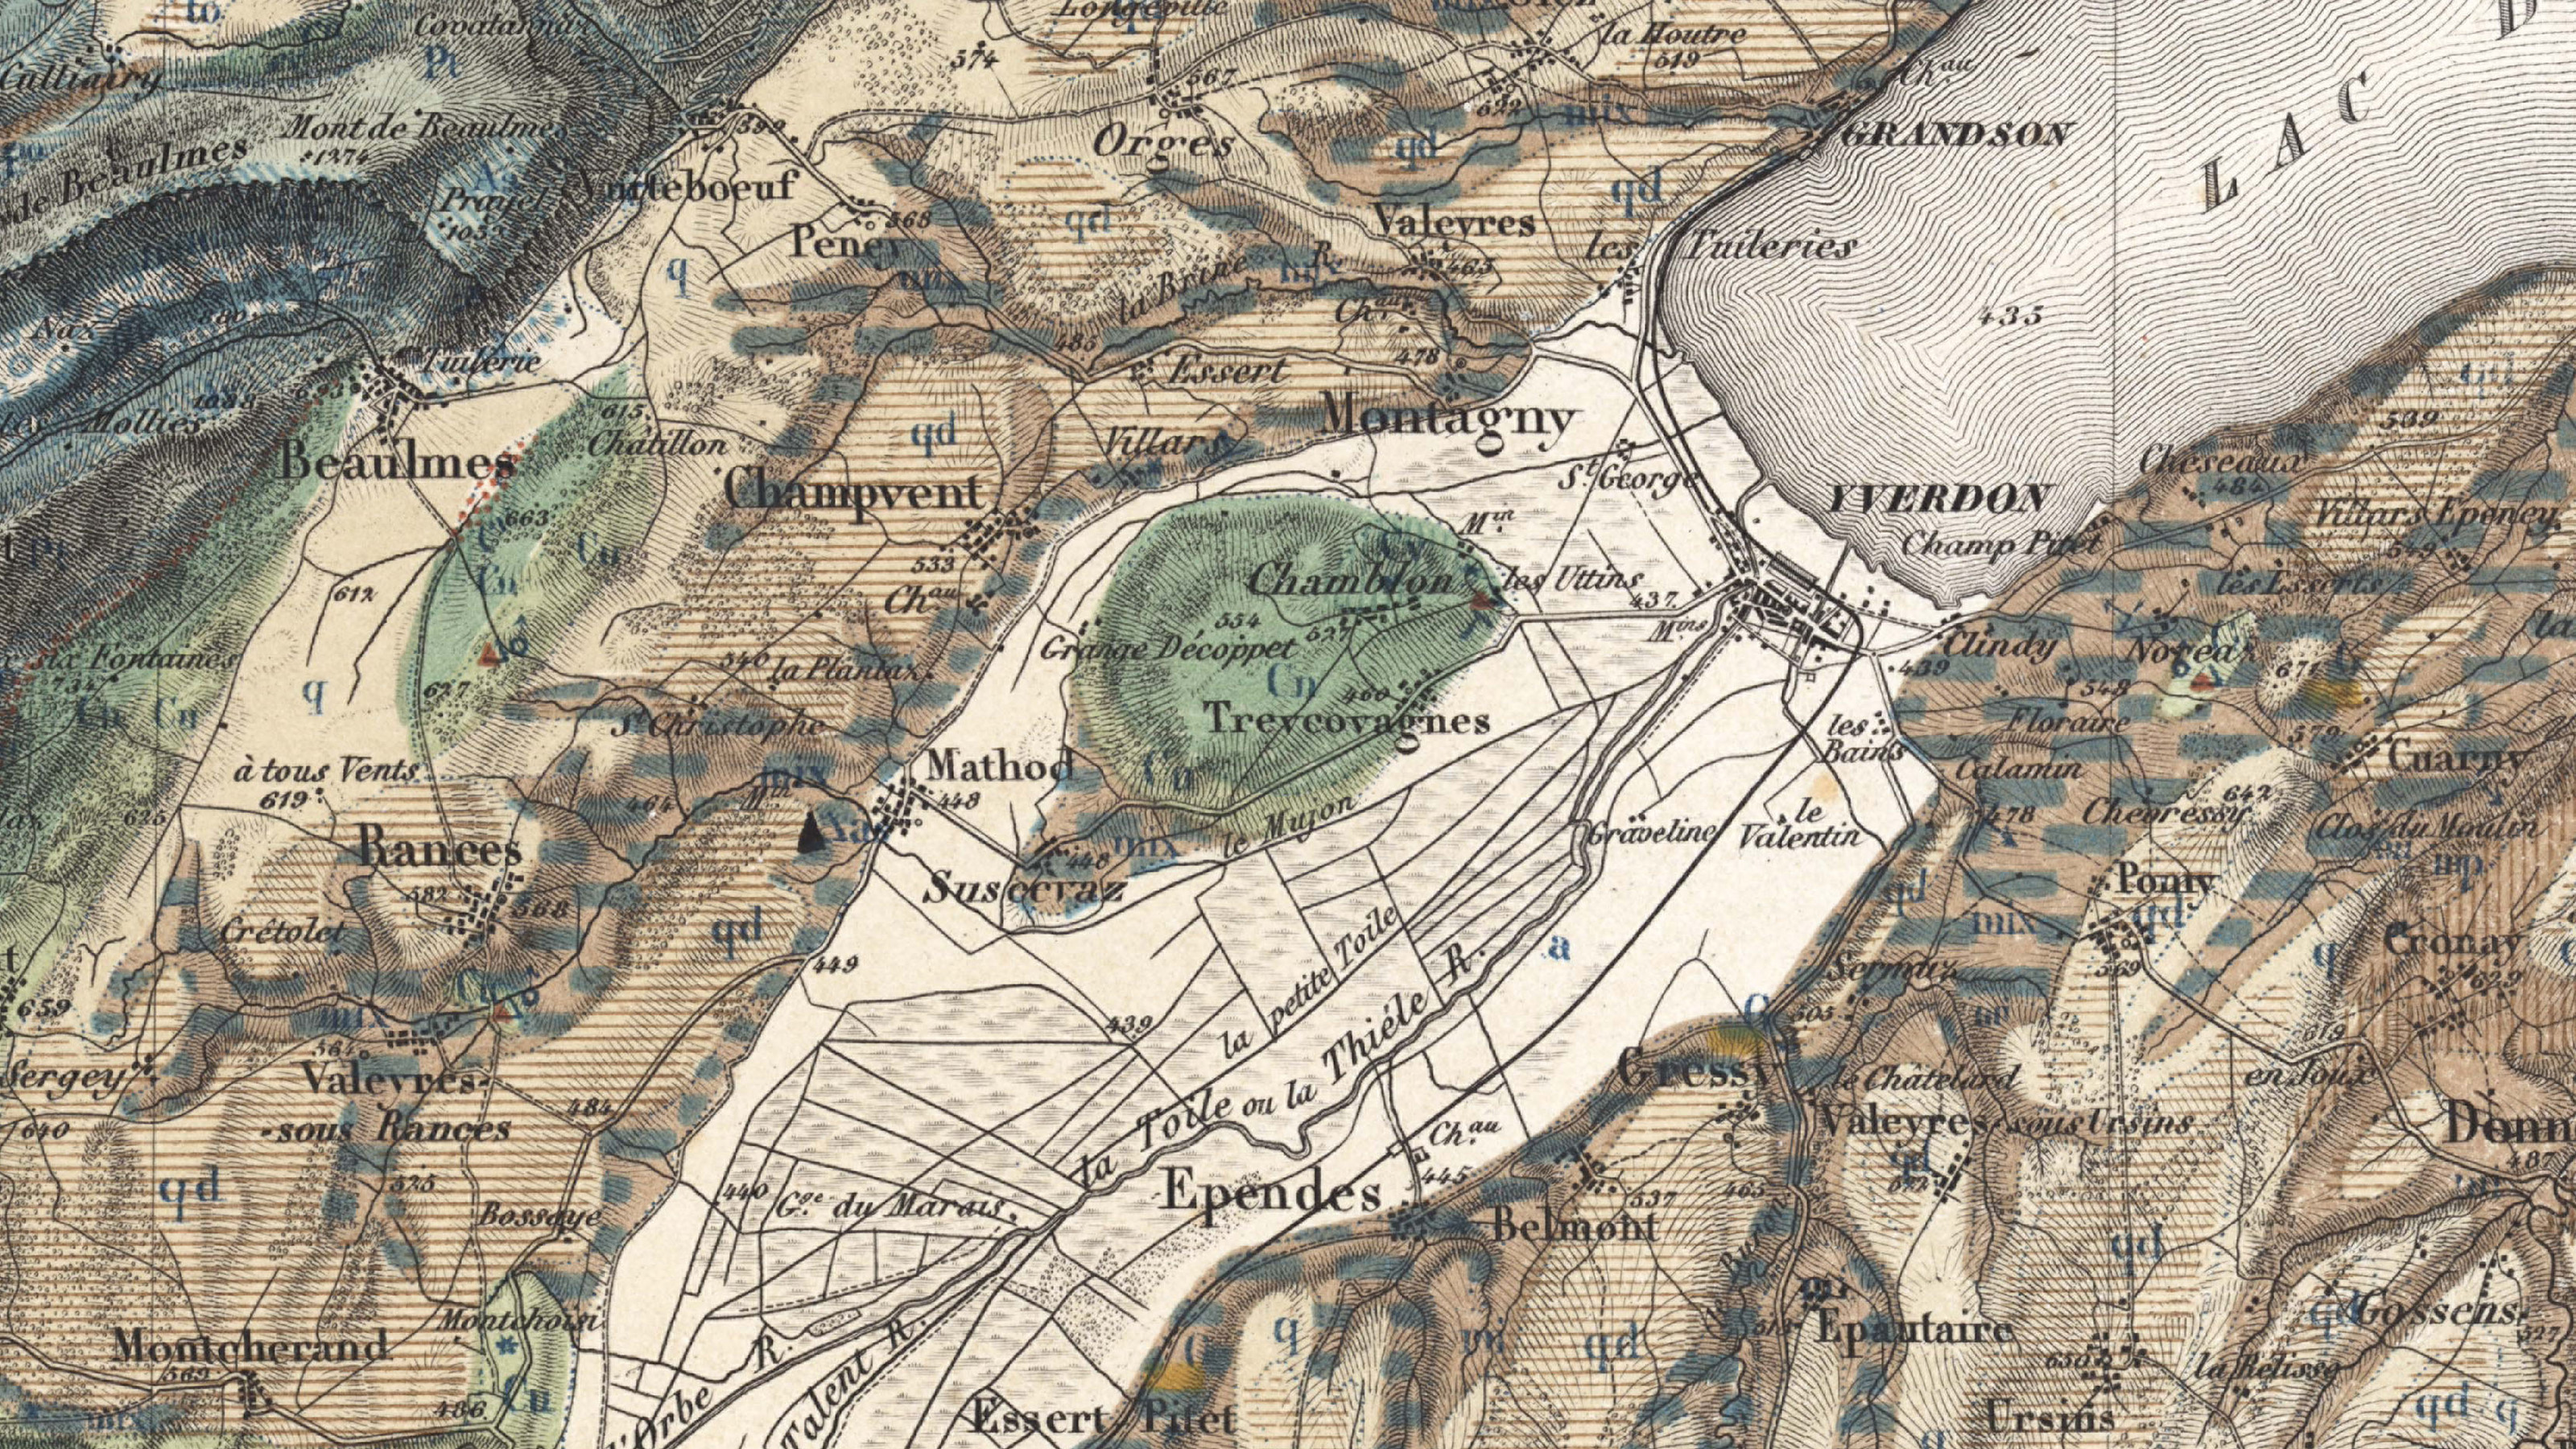 Ausschnitt aus der Geologischen Karte der Schweiz, Blatt 11. Der Ausschnitt zeigt den Raum Yverdon in zahlreichen Farben, die unterschiedliche geologische Gesteinsschichten markieren.